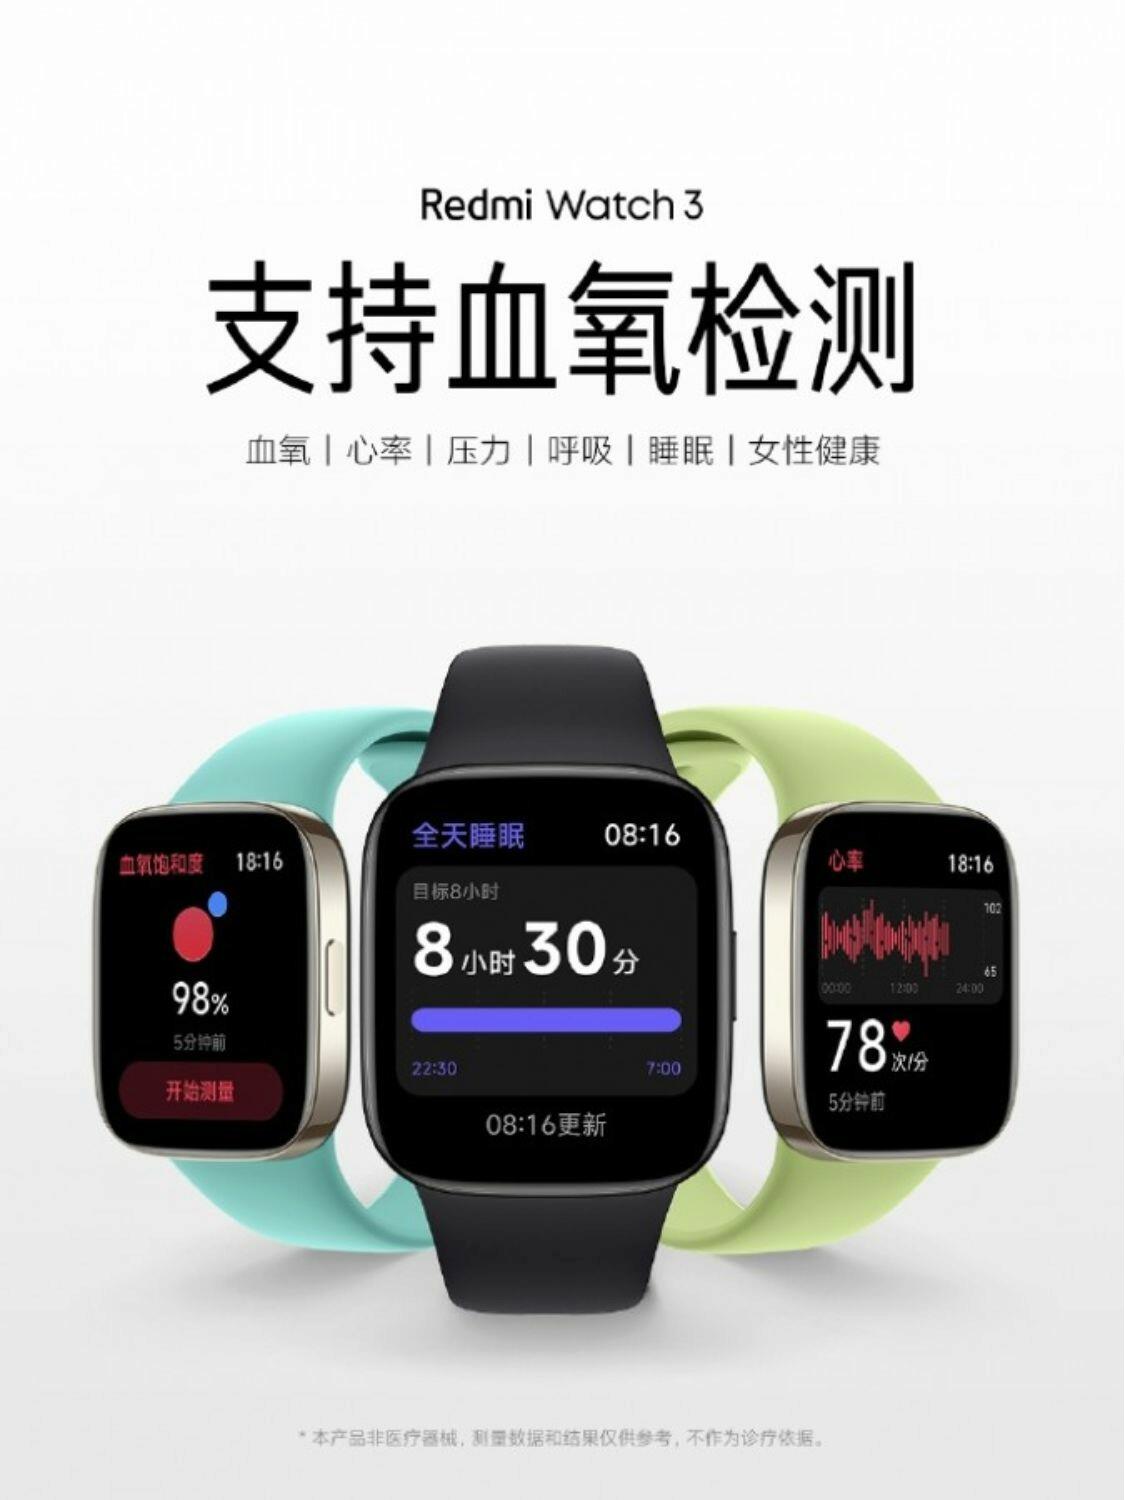 Как настроить часы редми вотч. Сяоми редми вотч 3. Редми вотч 4. Редми 2023. Xiaomi Redmi watch 3 обзор.